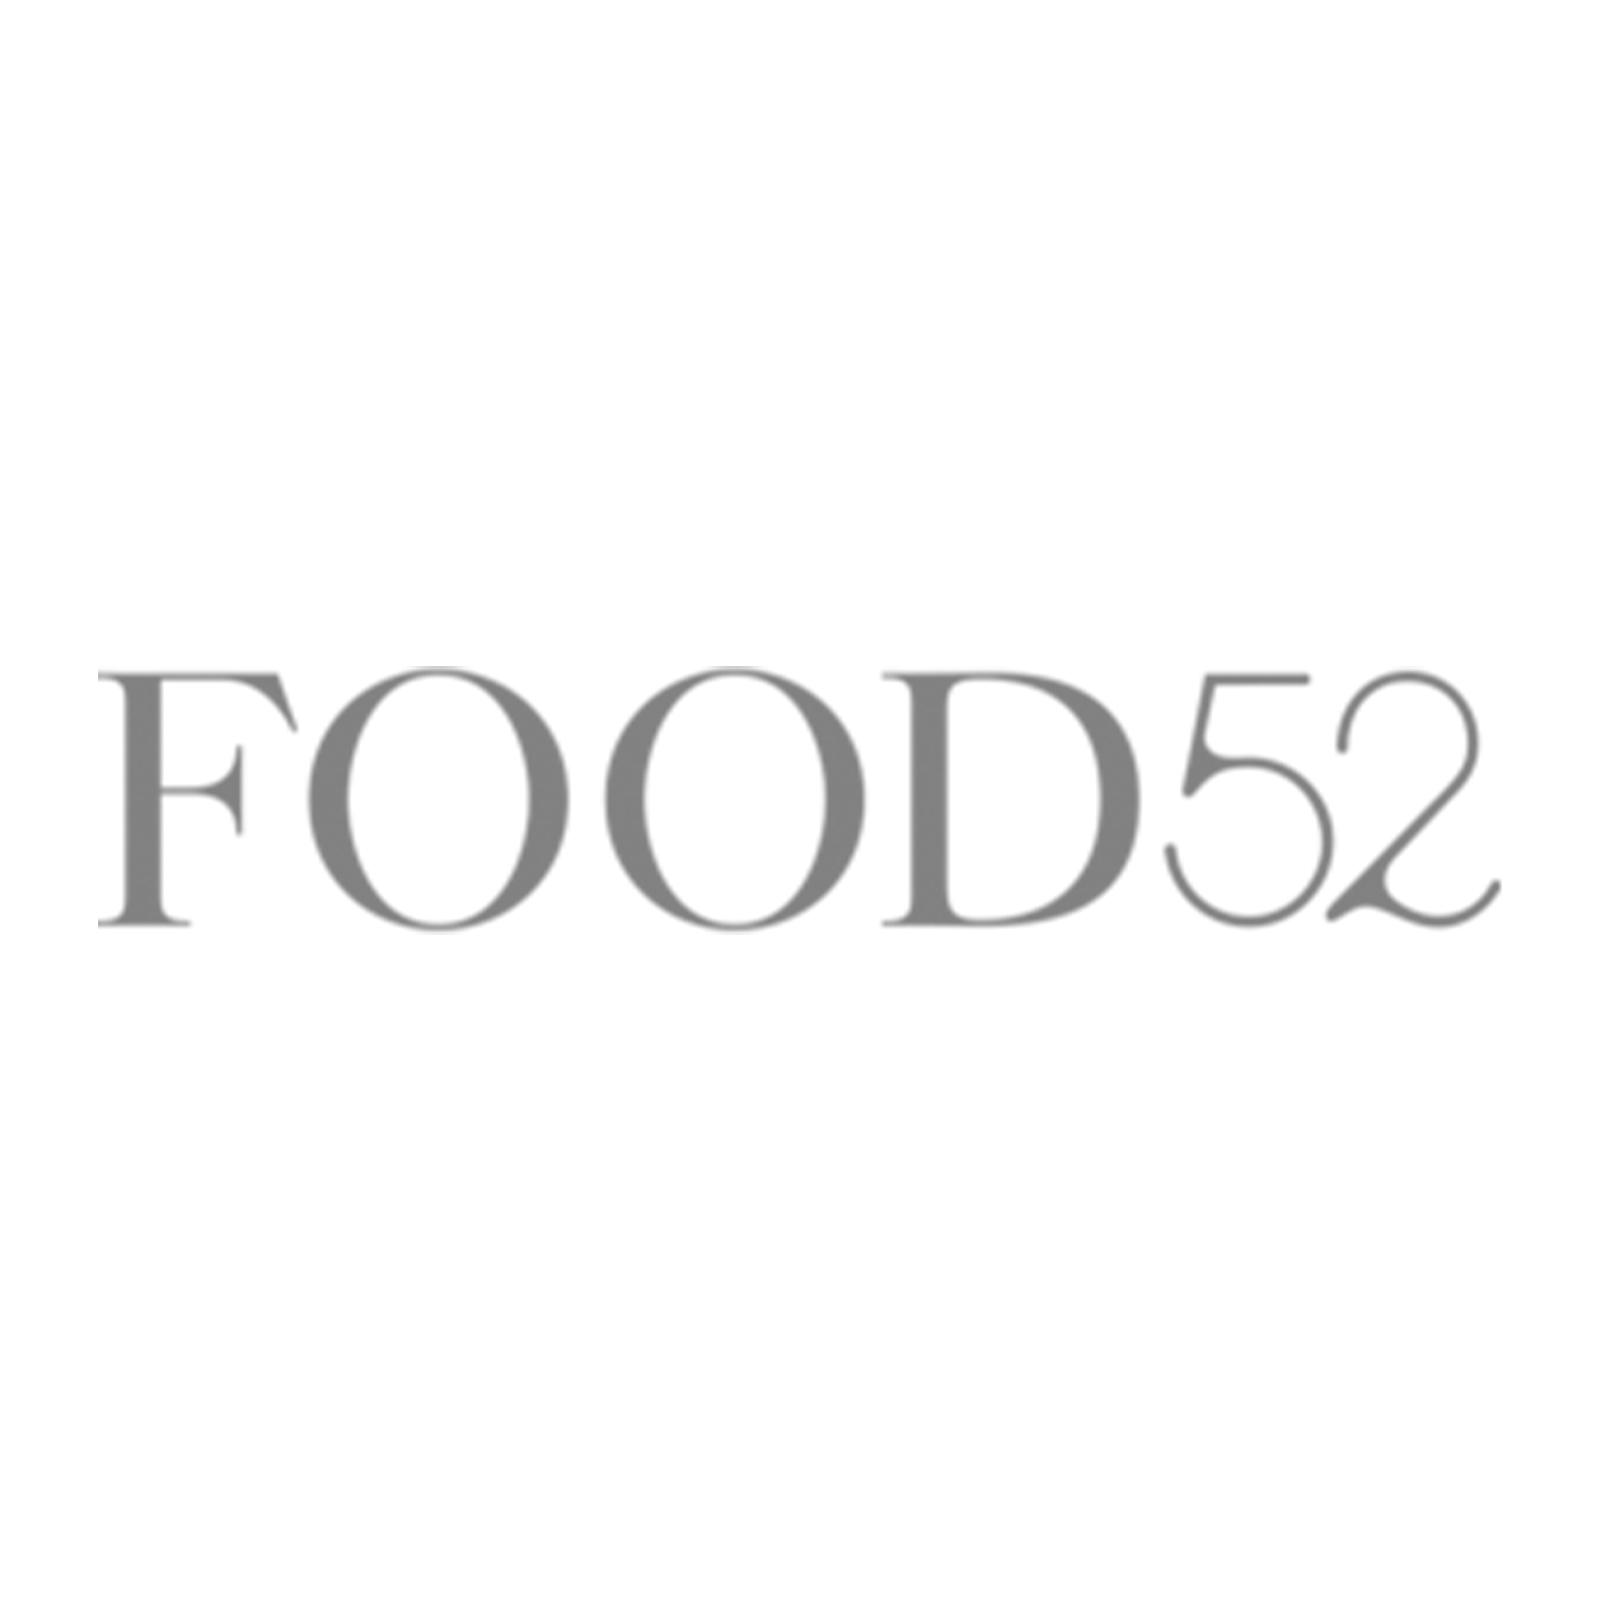 FOOD52